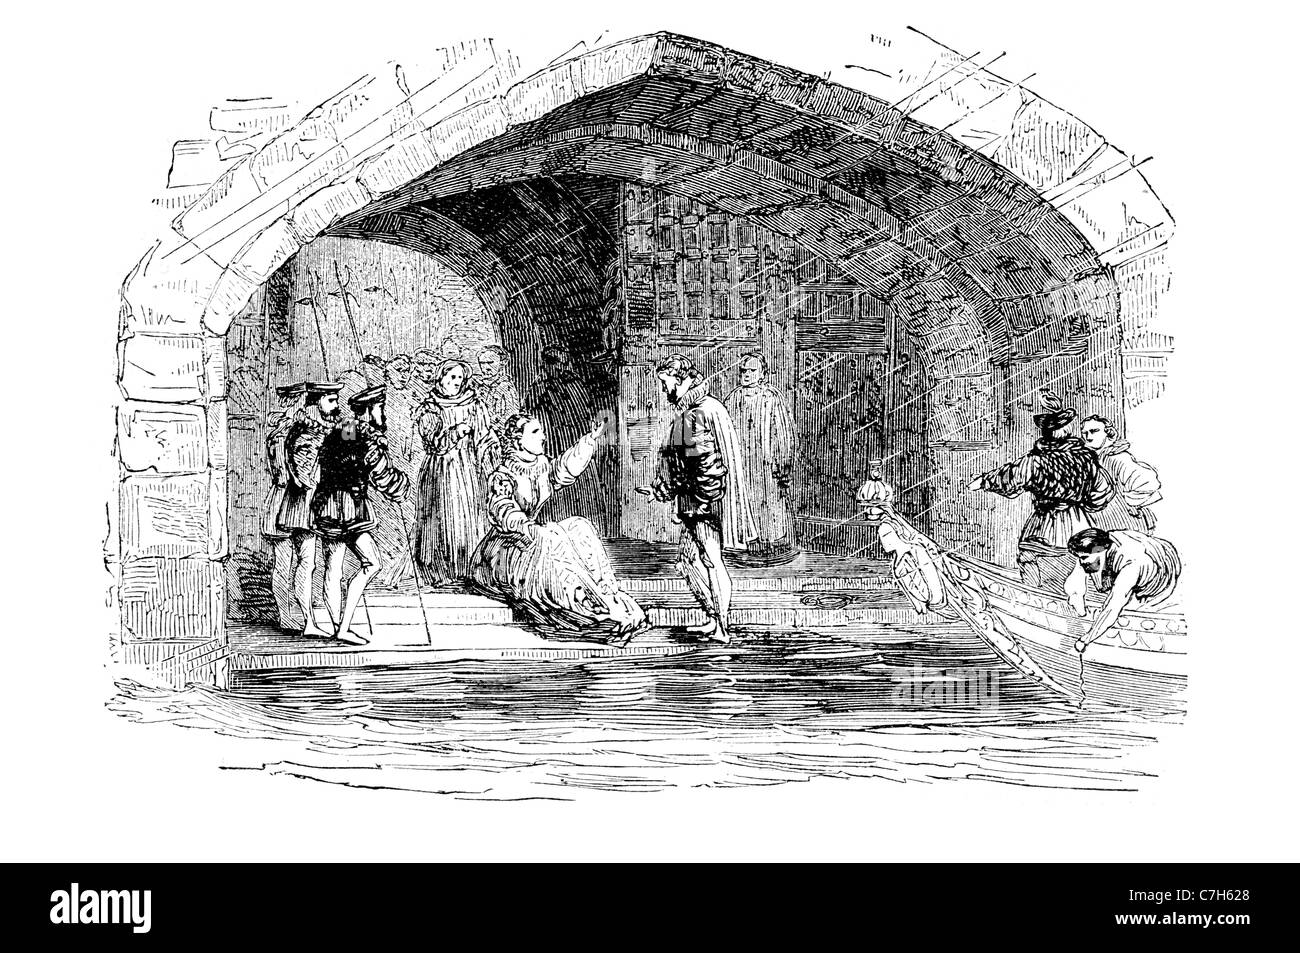 La porte des traîtres traître prisonnier de la princesse Elizabeth Tudor Tower Londres traîtres' Gate d'entrée de l'eau St Thomas's Tower royal fam Banque D'Images